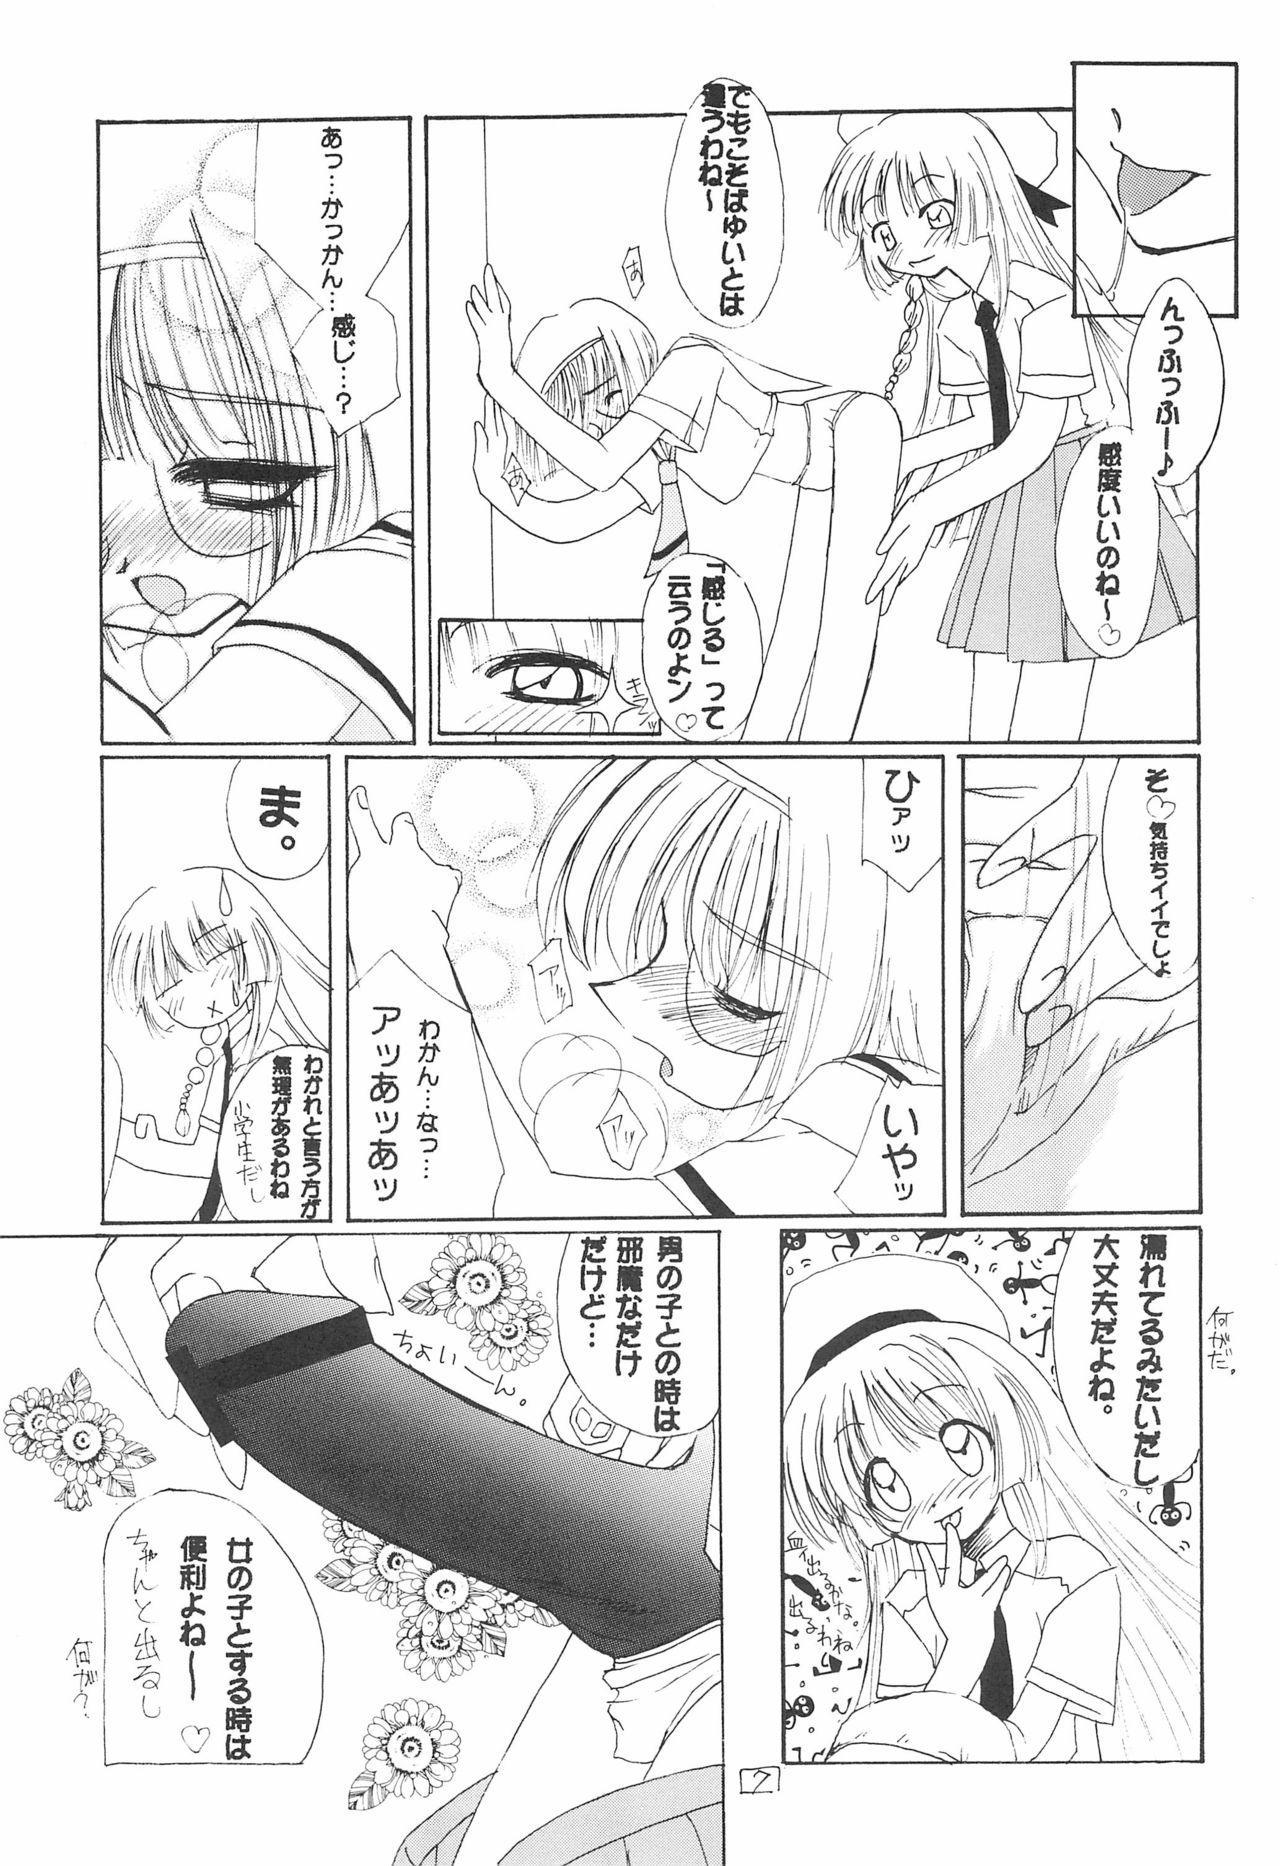 18yo JEWEL BOX 7 - Cardcaptor sakura Full Movie - Page 11